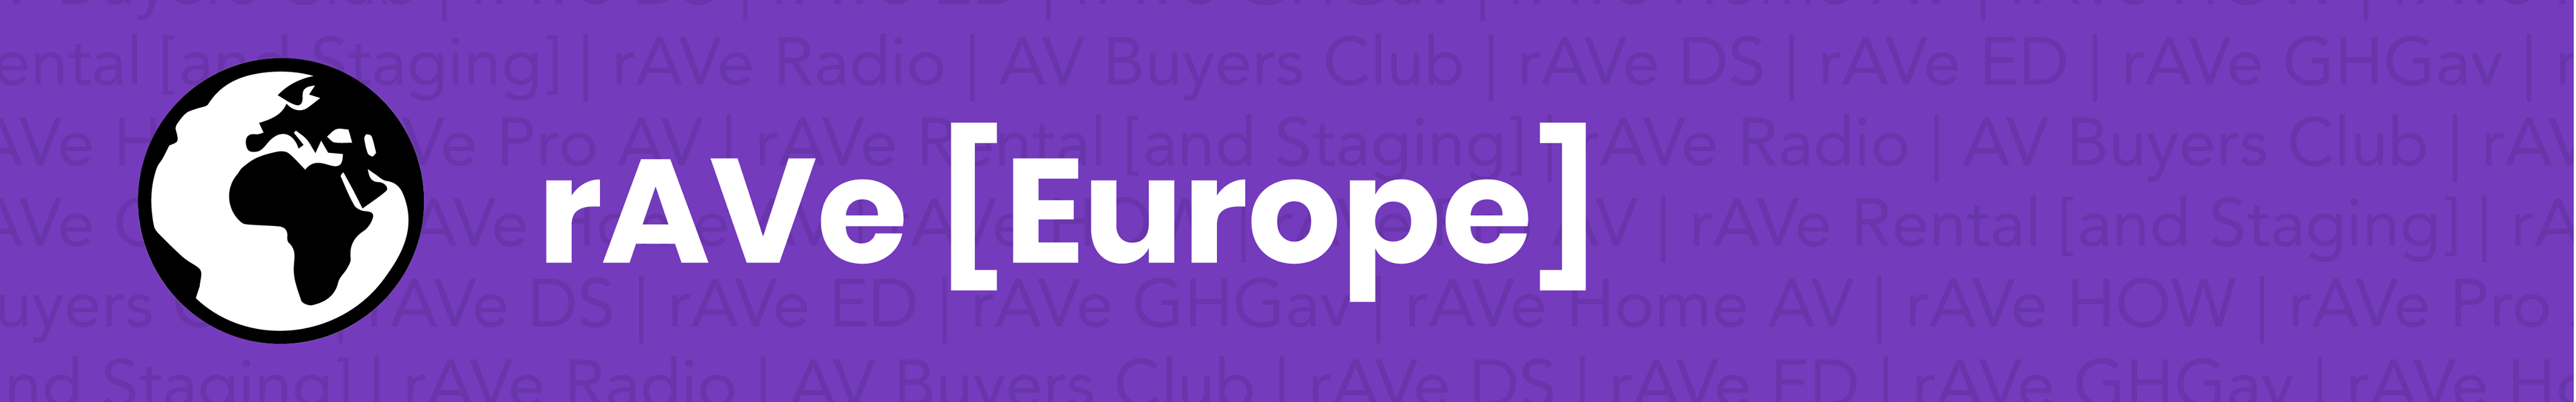 rAVe Europe Newsletter Header